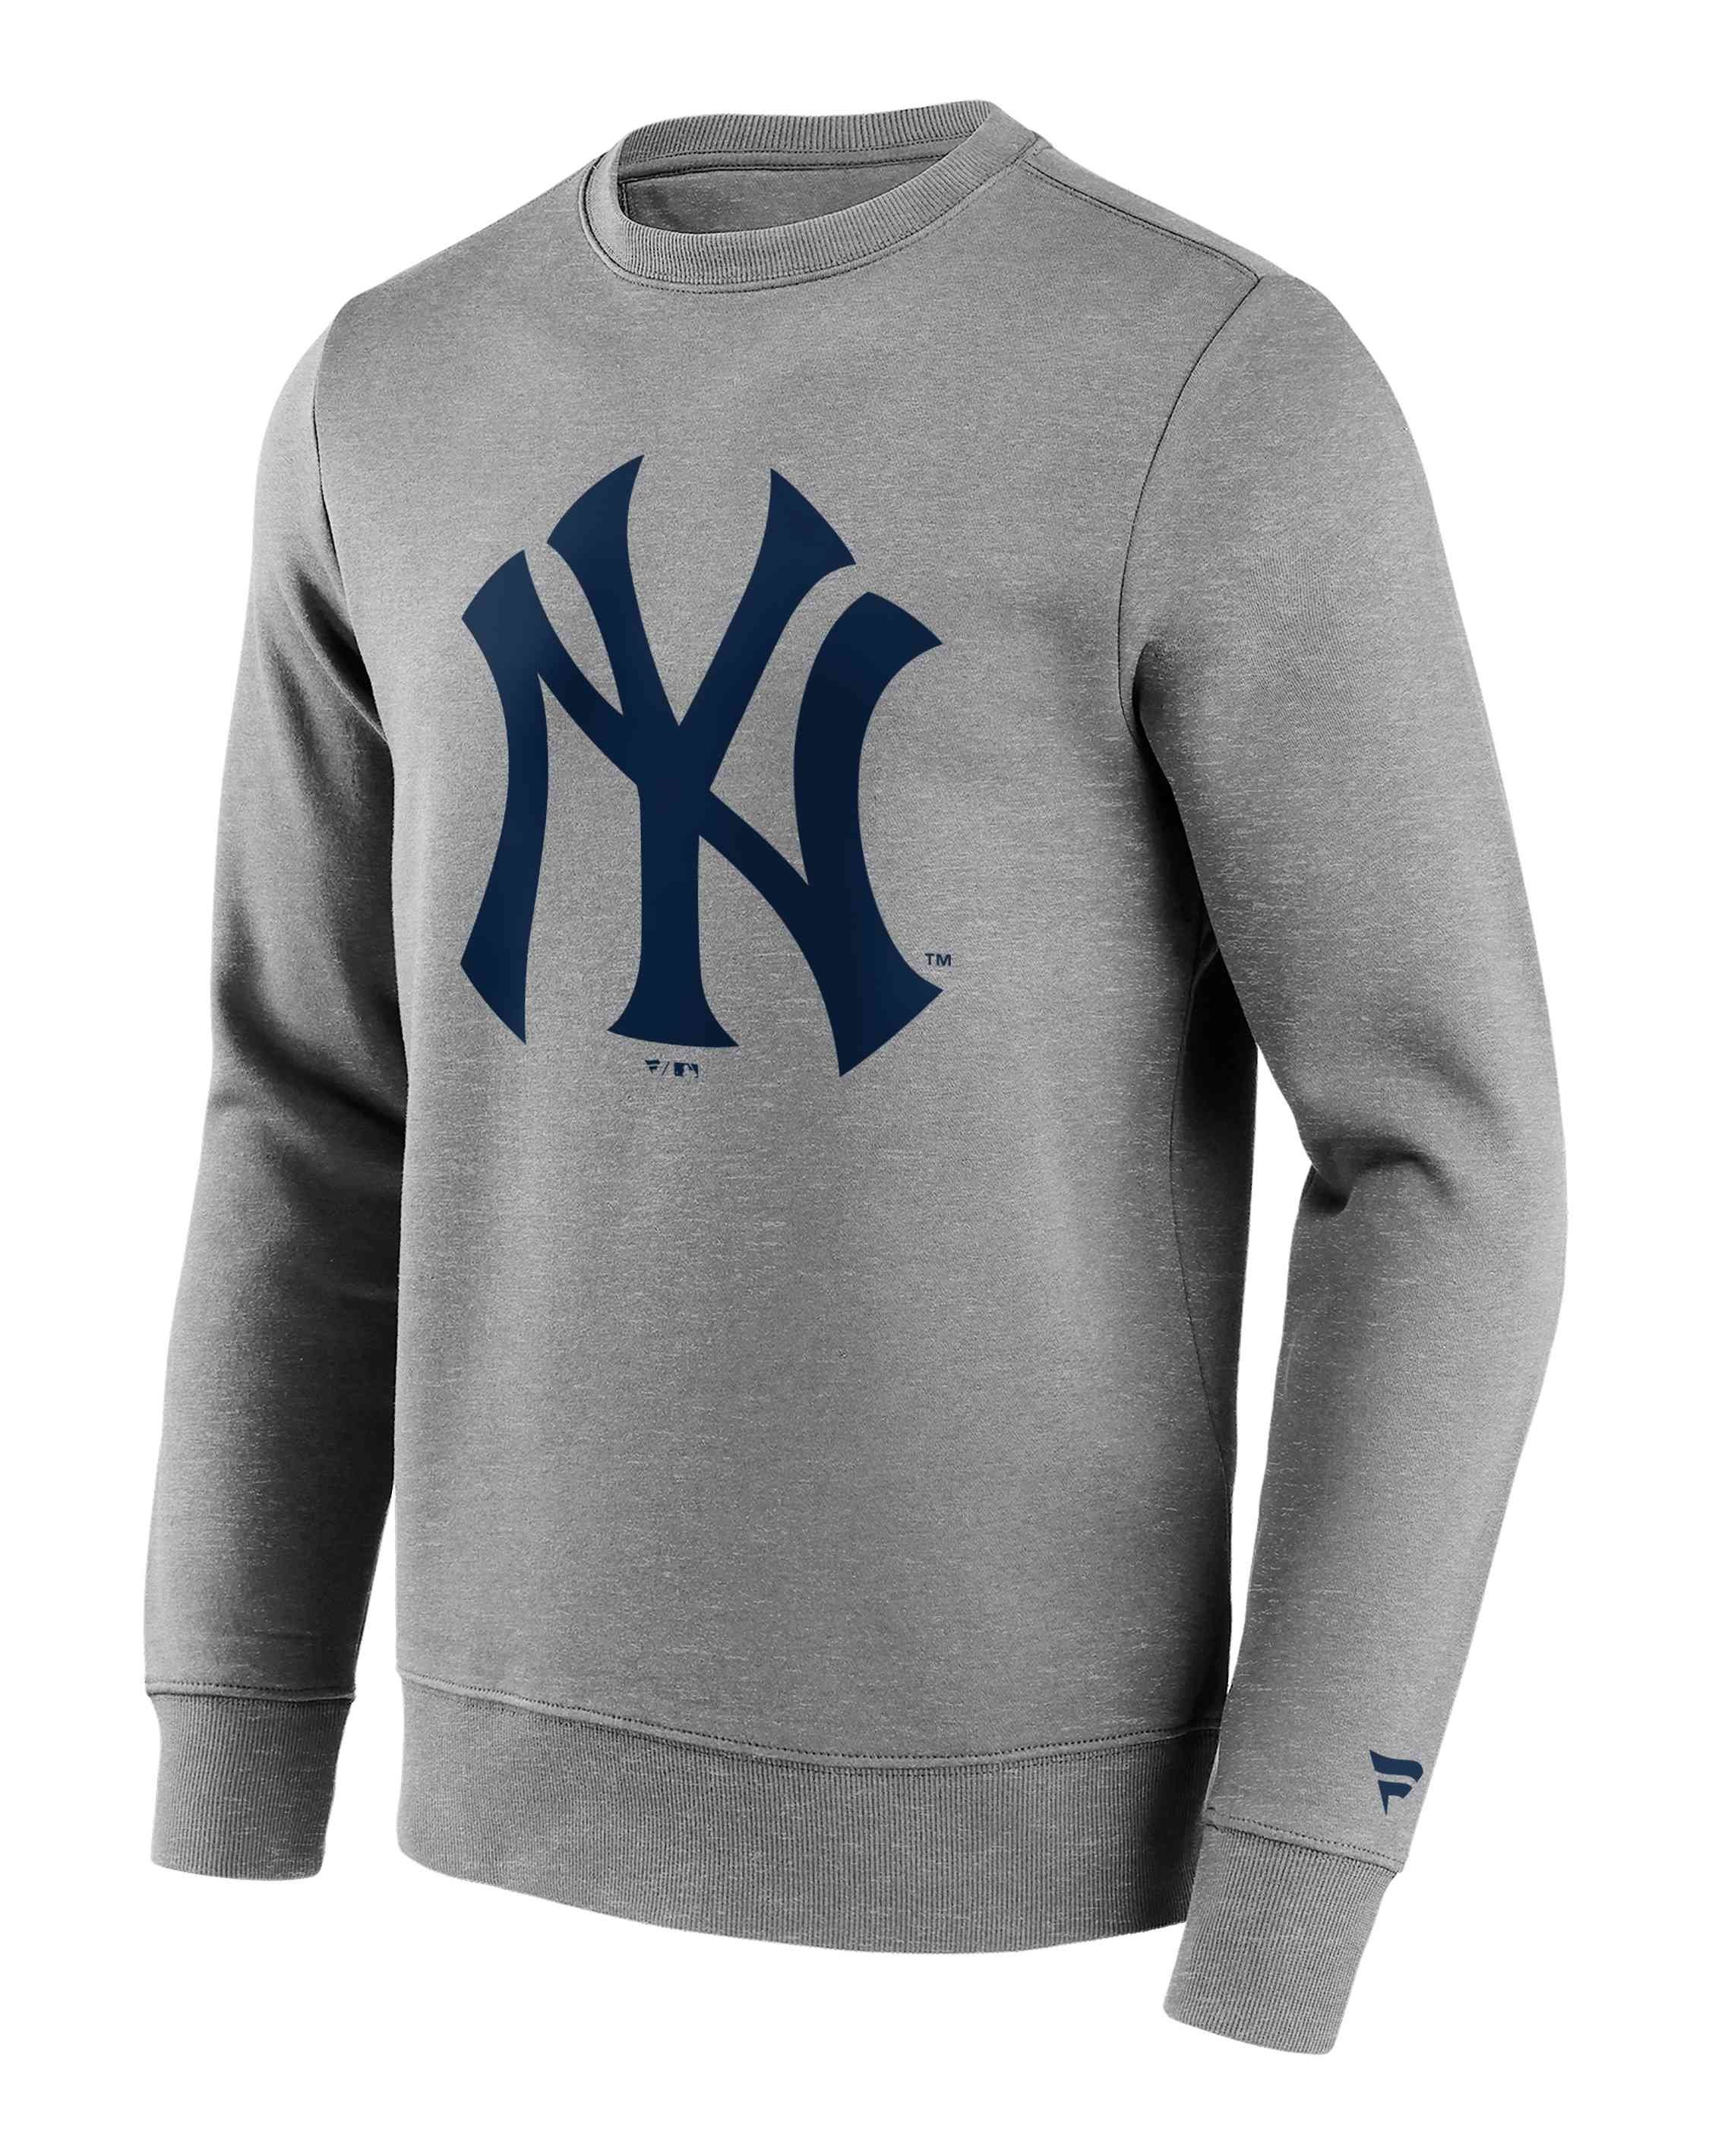 Fanatics Sweatshirt MLB New York Yankees Primary Logo Graphic Crew